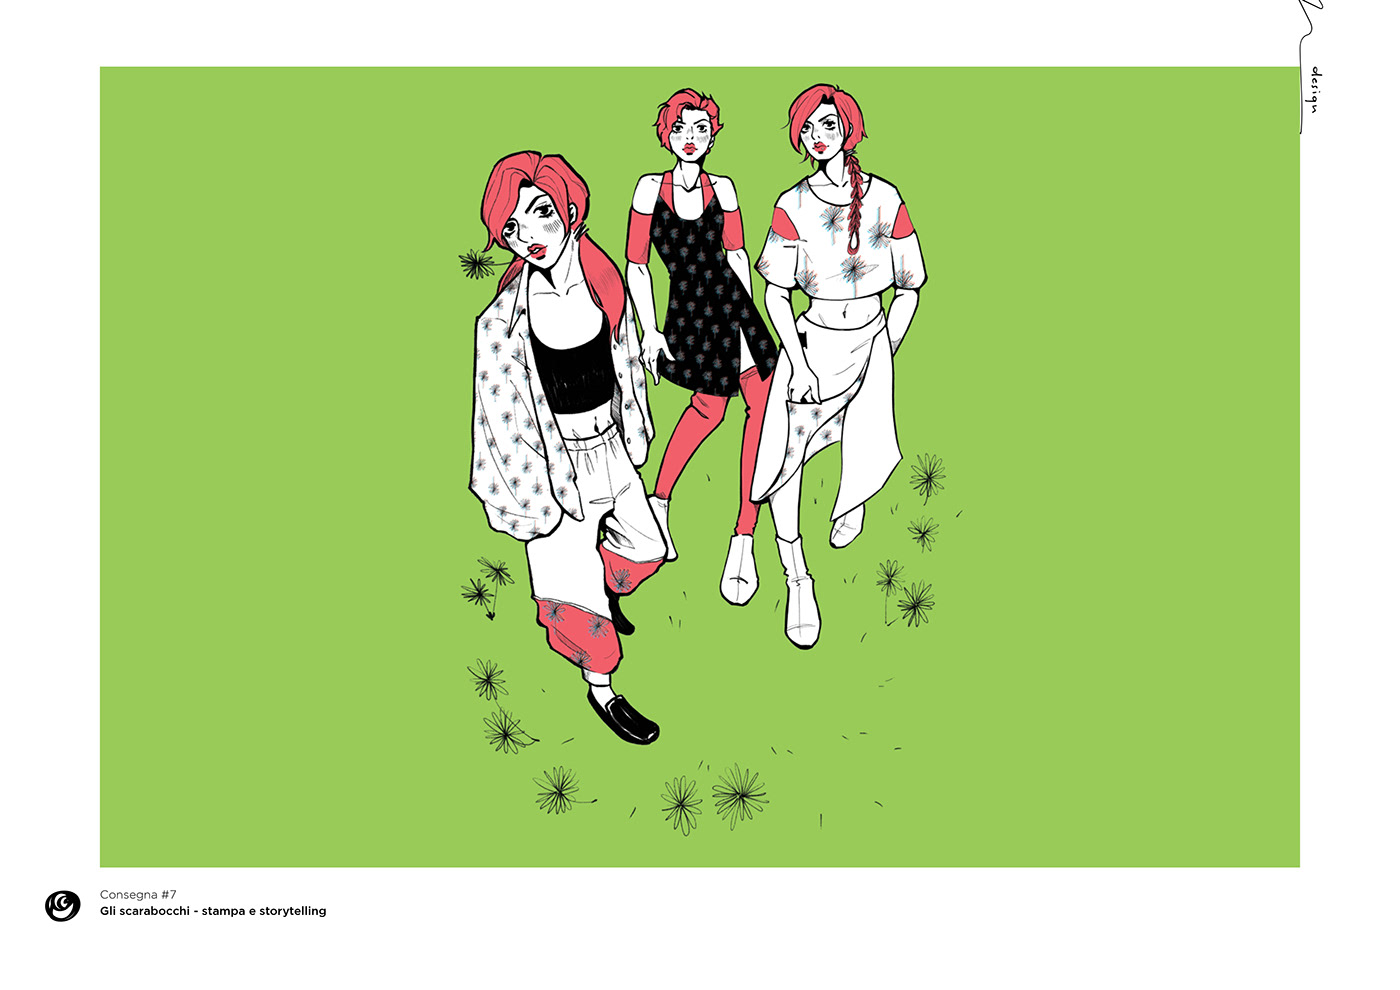 politecnico di milano fashion illustration illustrazione illustrations fashion design sketch artwork